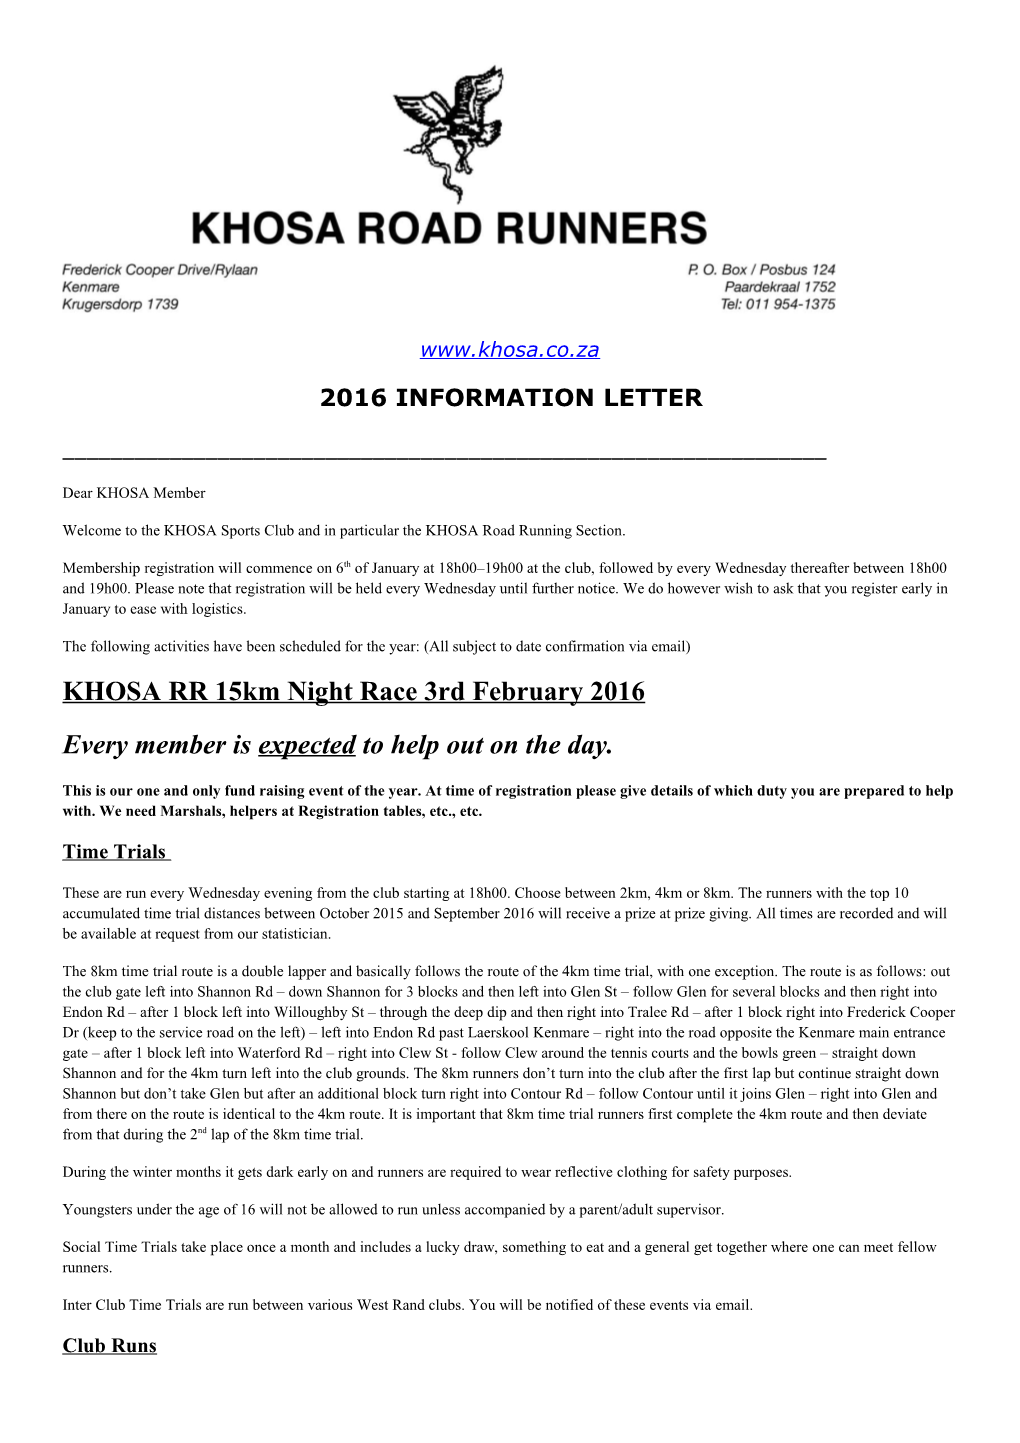 2016 Information Letter